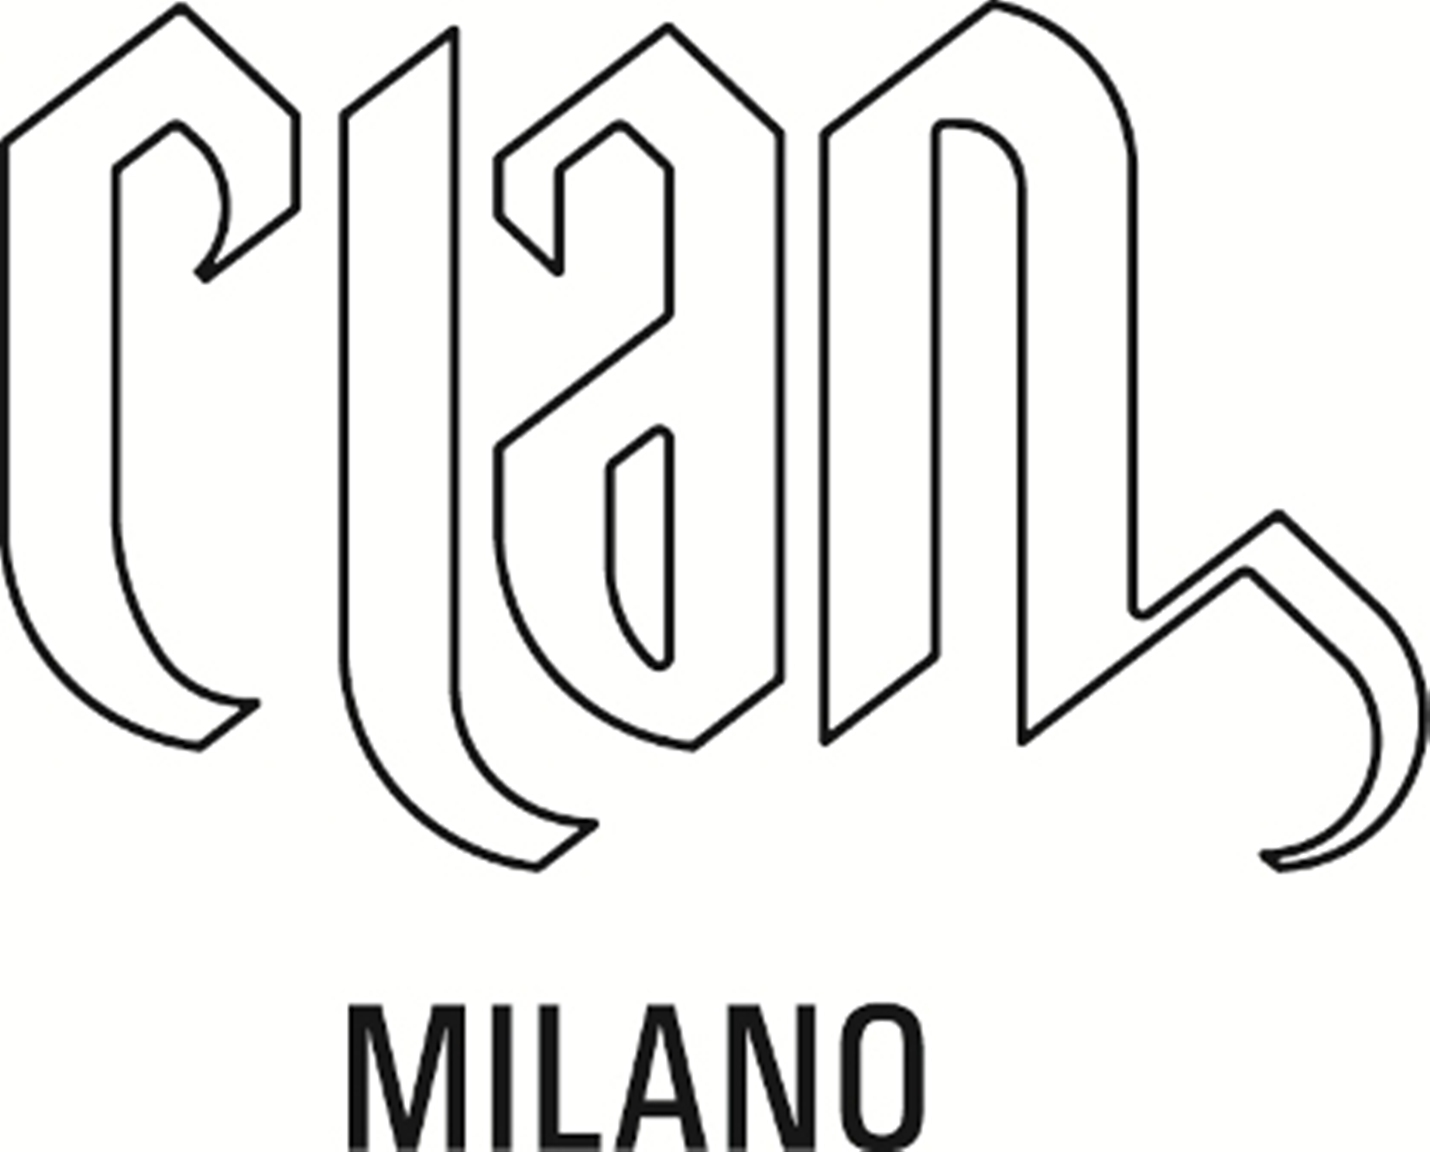 Clan Milano